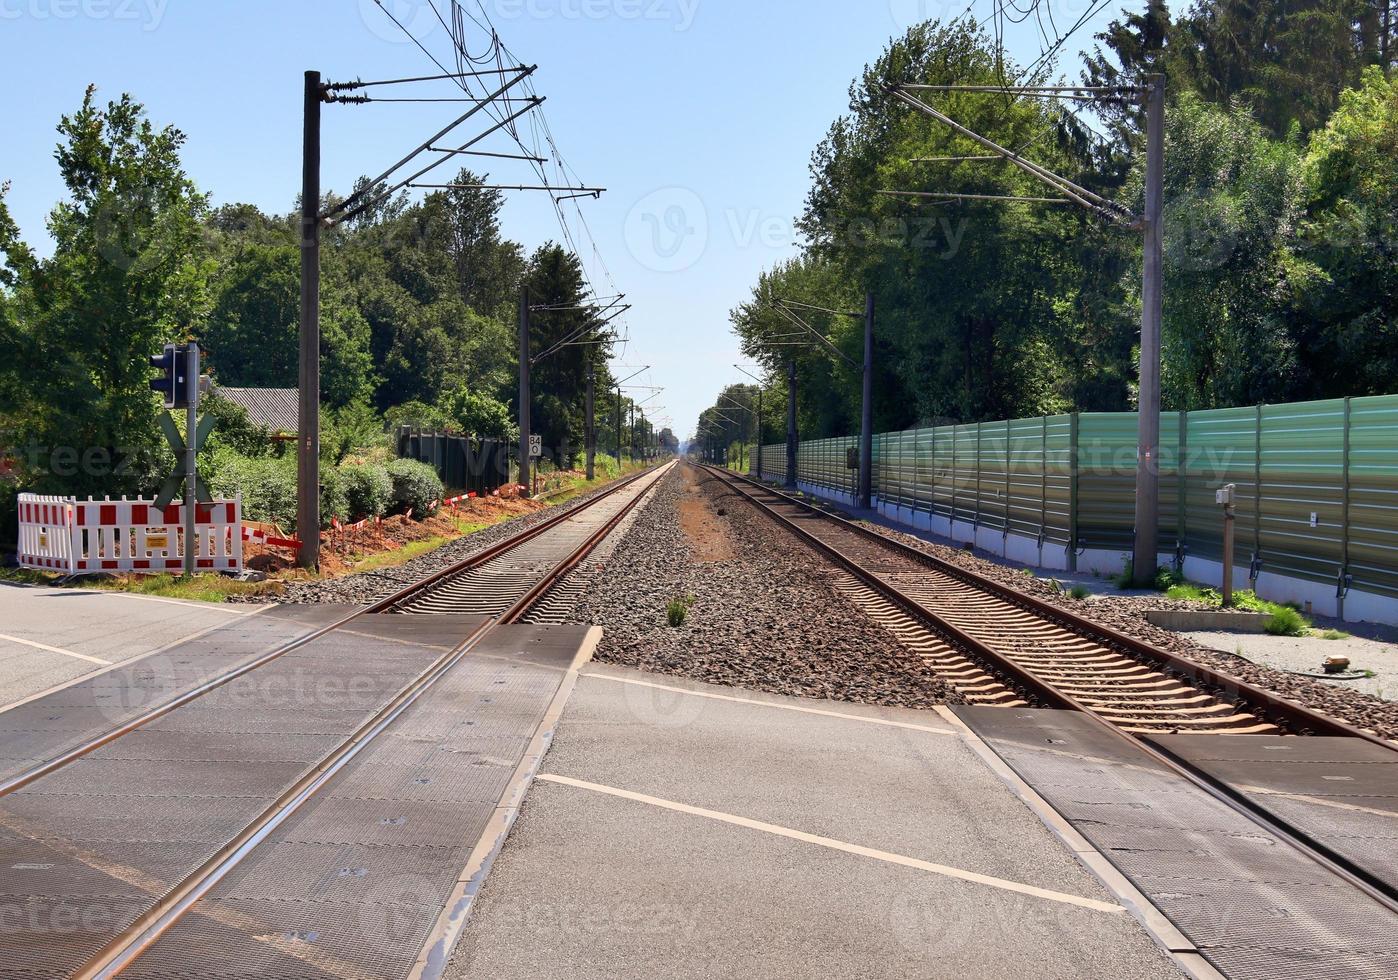 meerdere spoorweg sporen met kruispunten Bij een spoorweg station in een perspectief en vogelstand visie foto